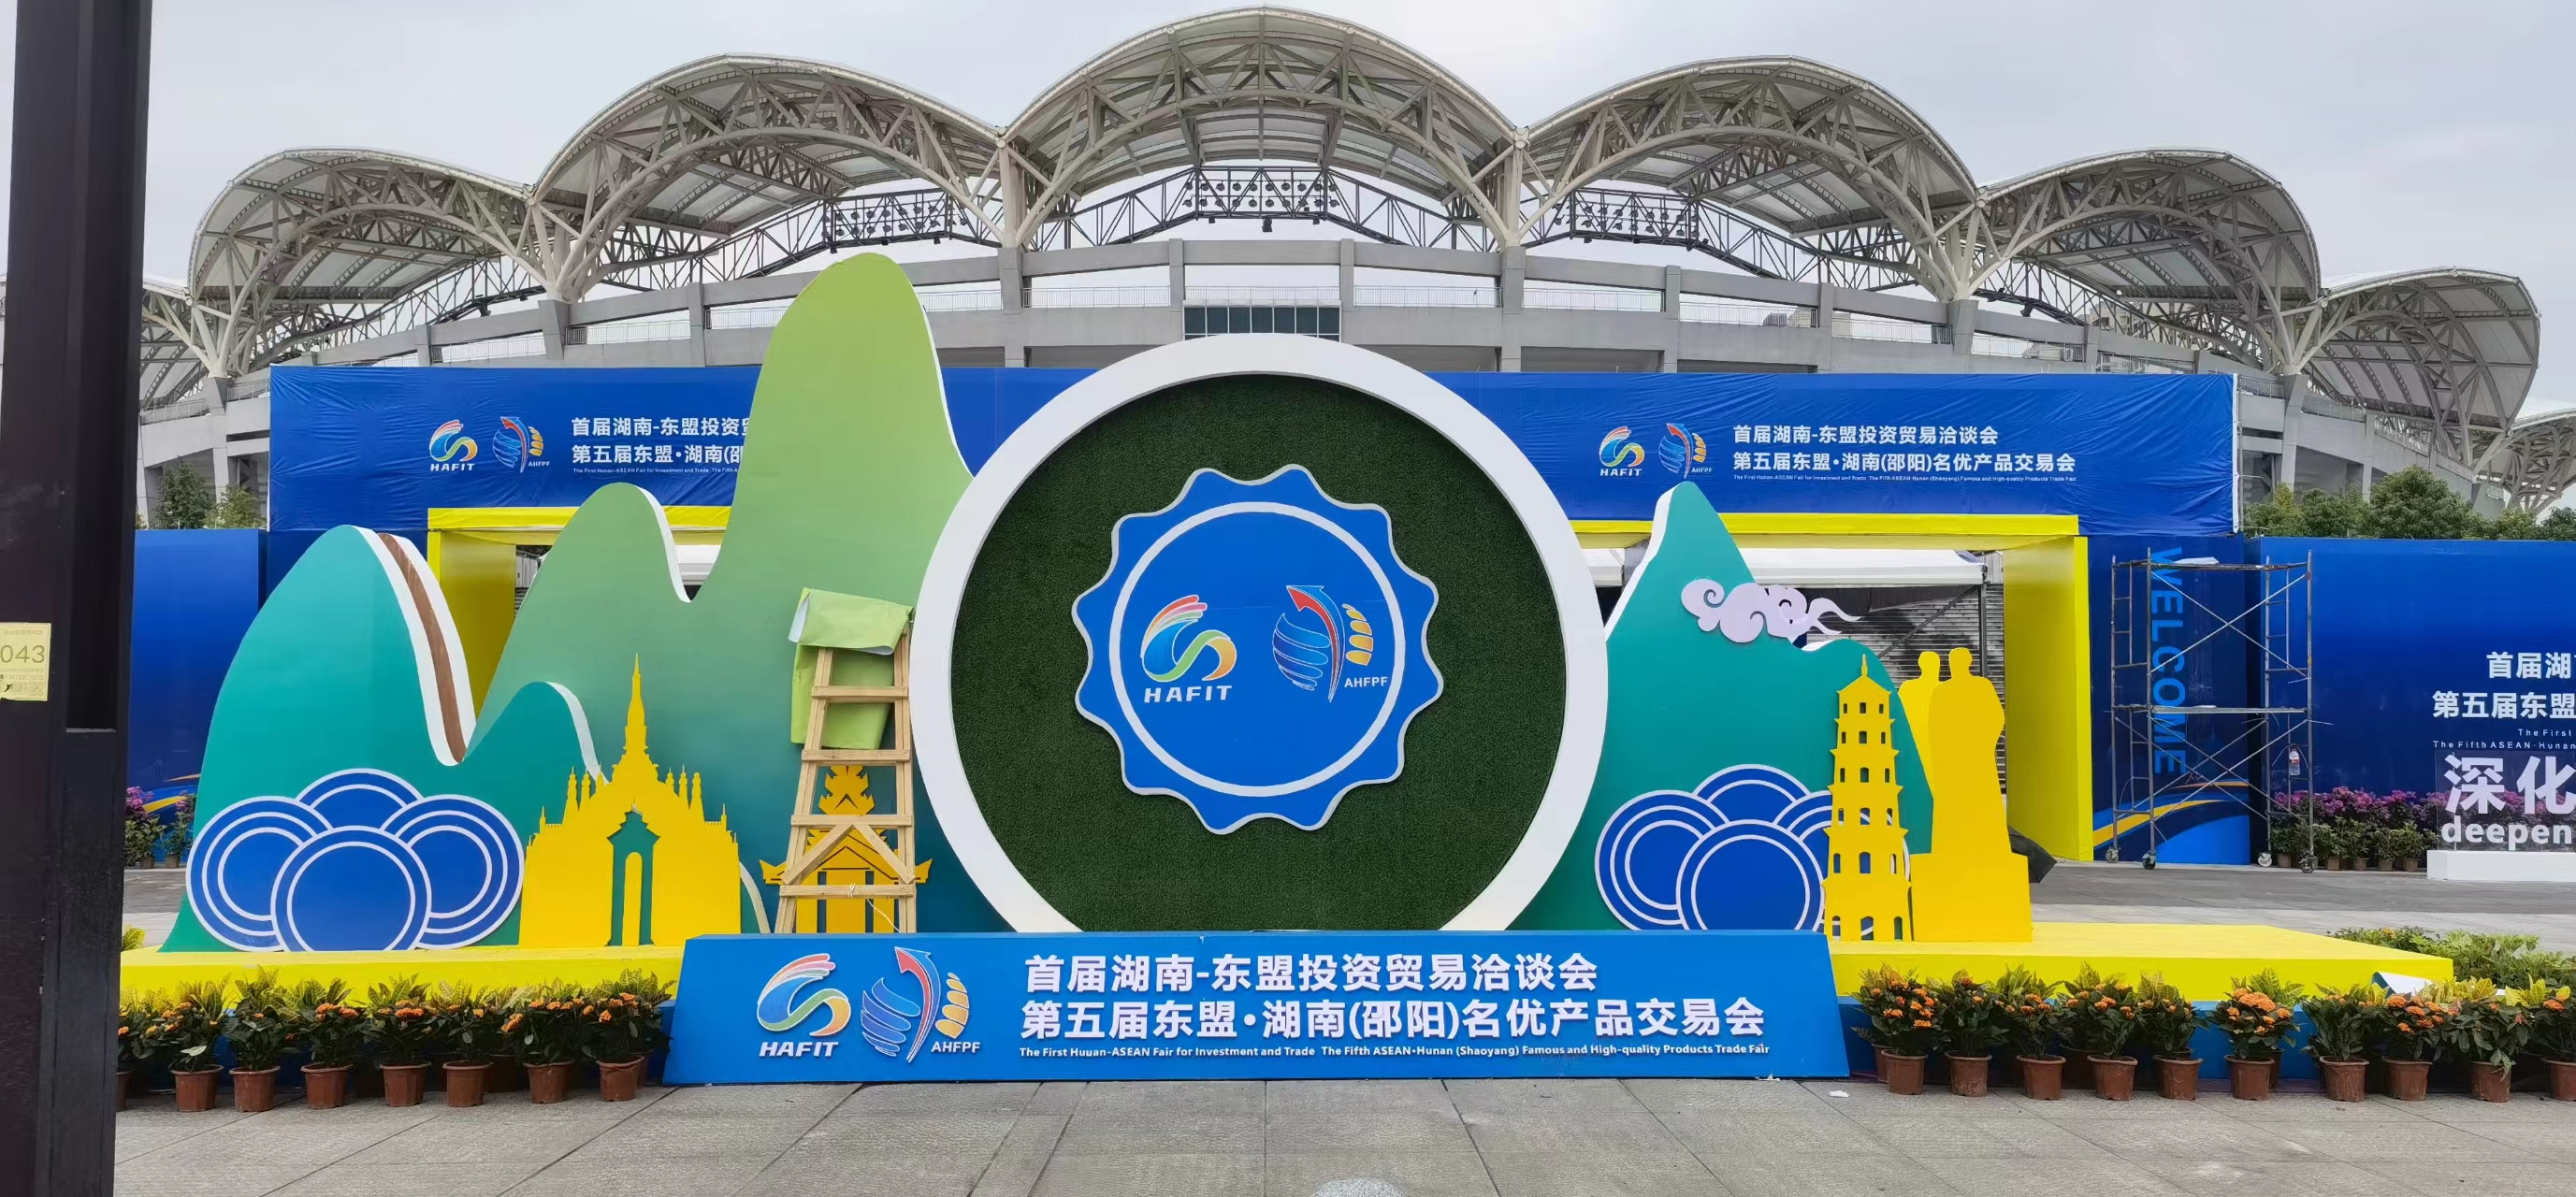 Ensimmäiset Hunan-ASEAN-sijoitus- ja kauppamessut avattiin Shaoyangissa